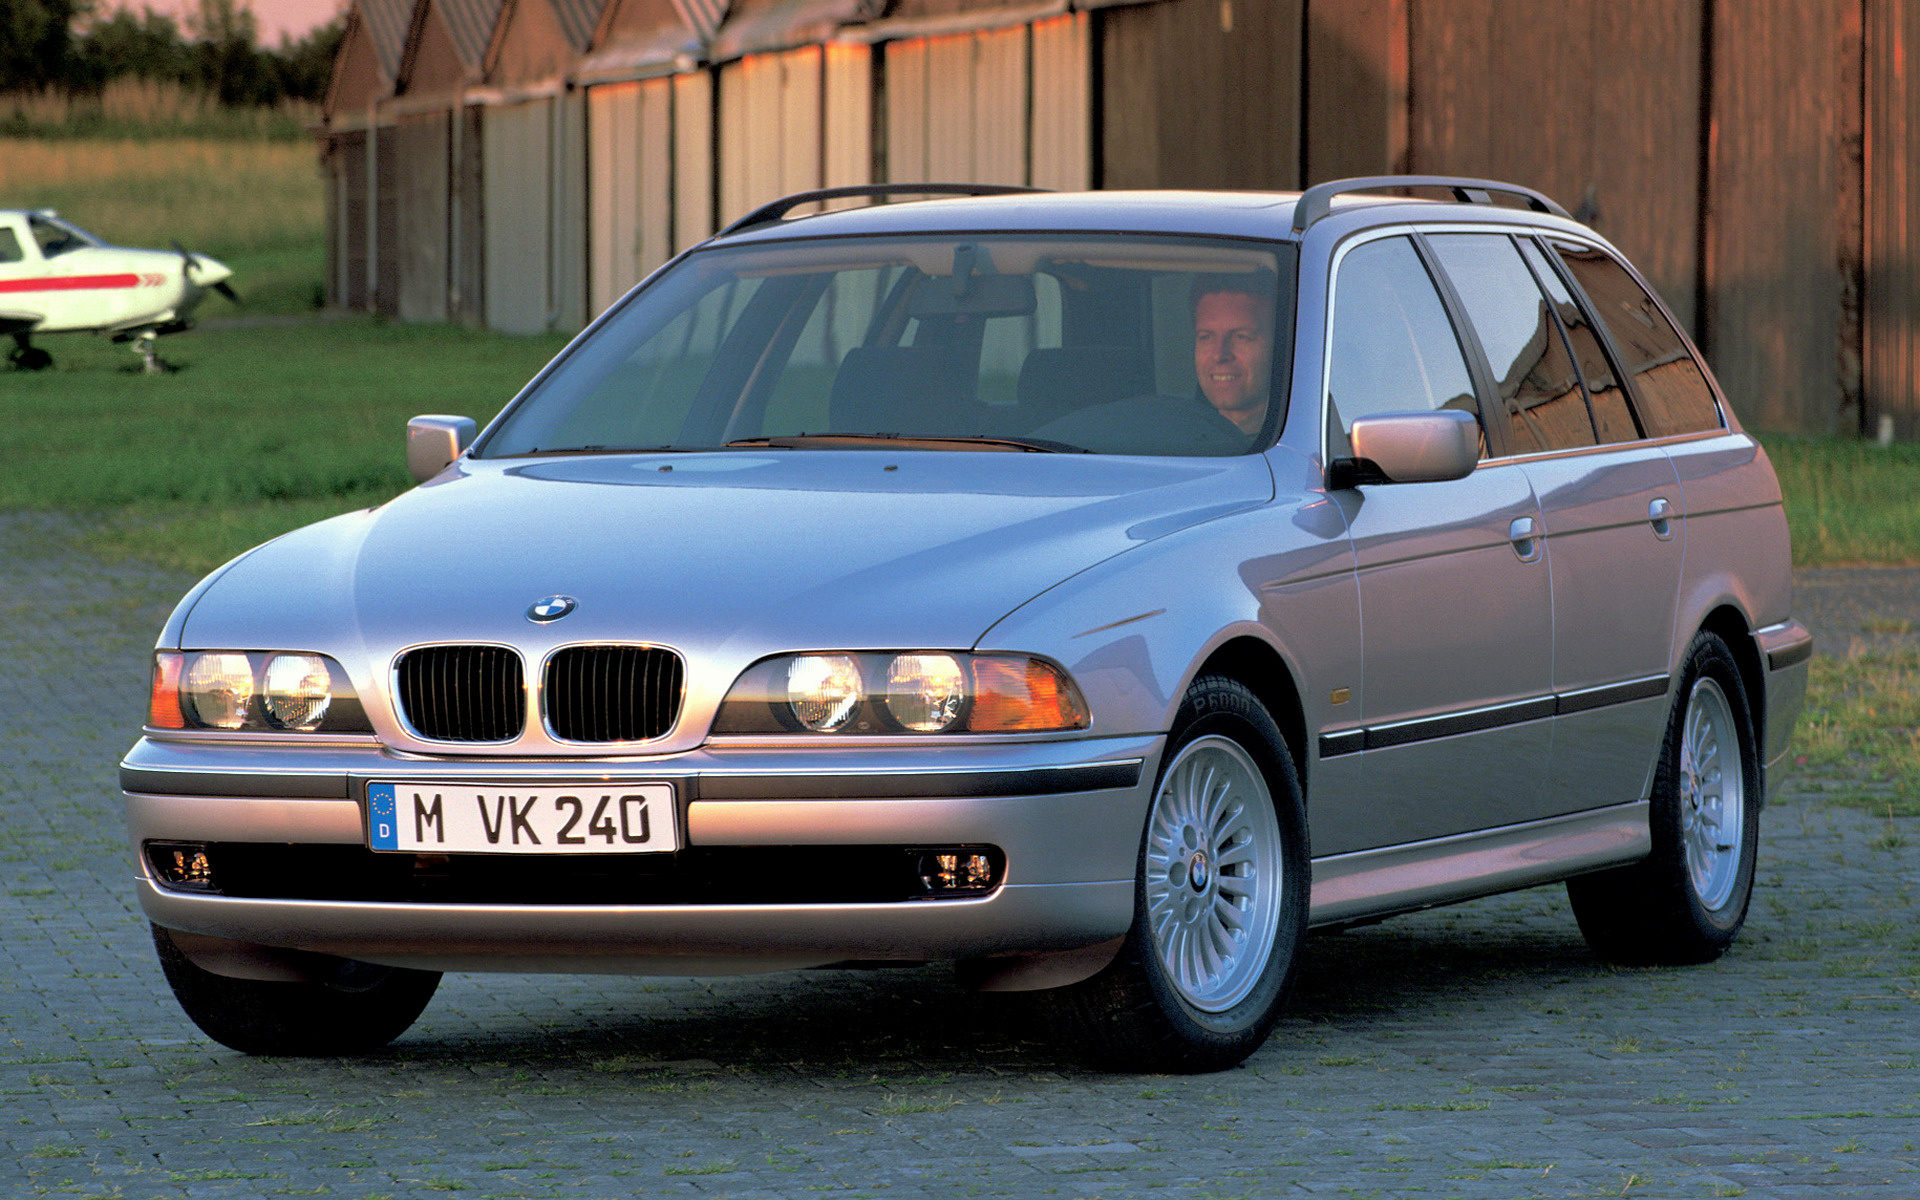 5 series e39. BMW e39 2000 525. BMW e39 525 Touring. BMW 520i e39 2000. BMW 5er e39 Touring.